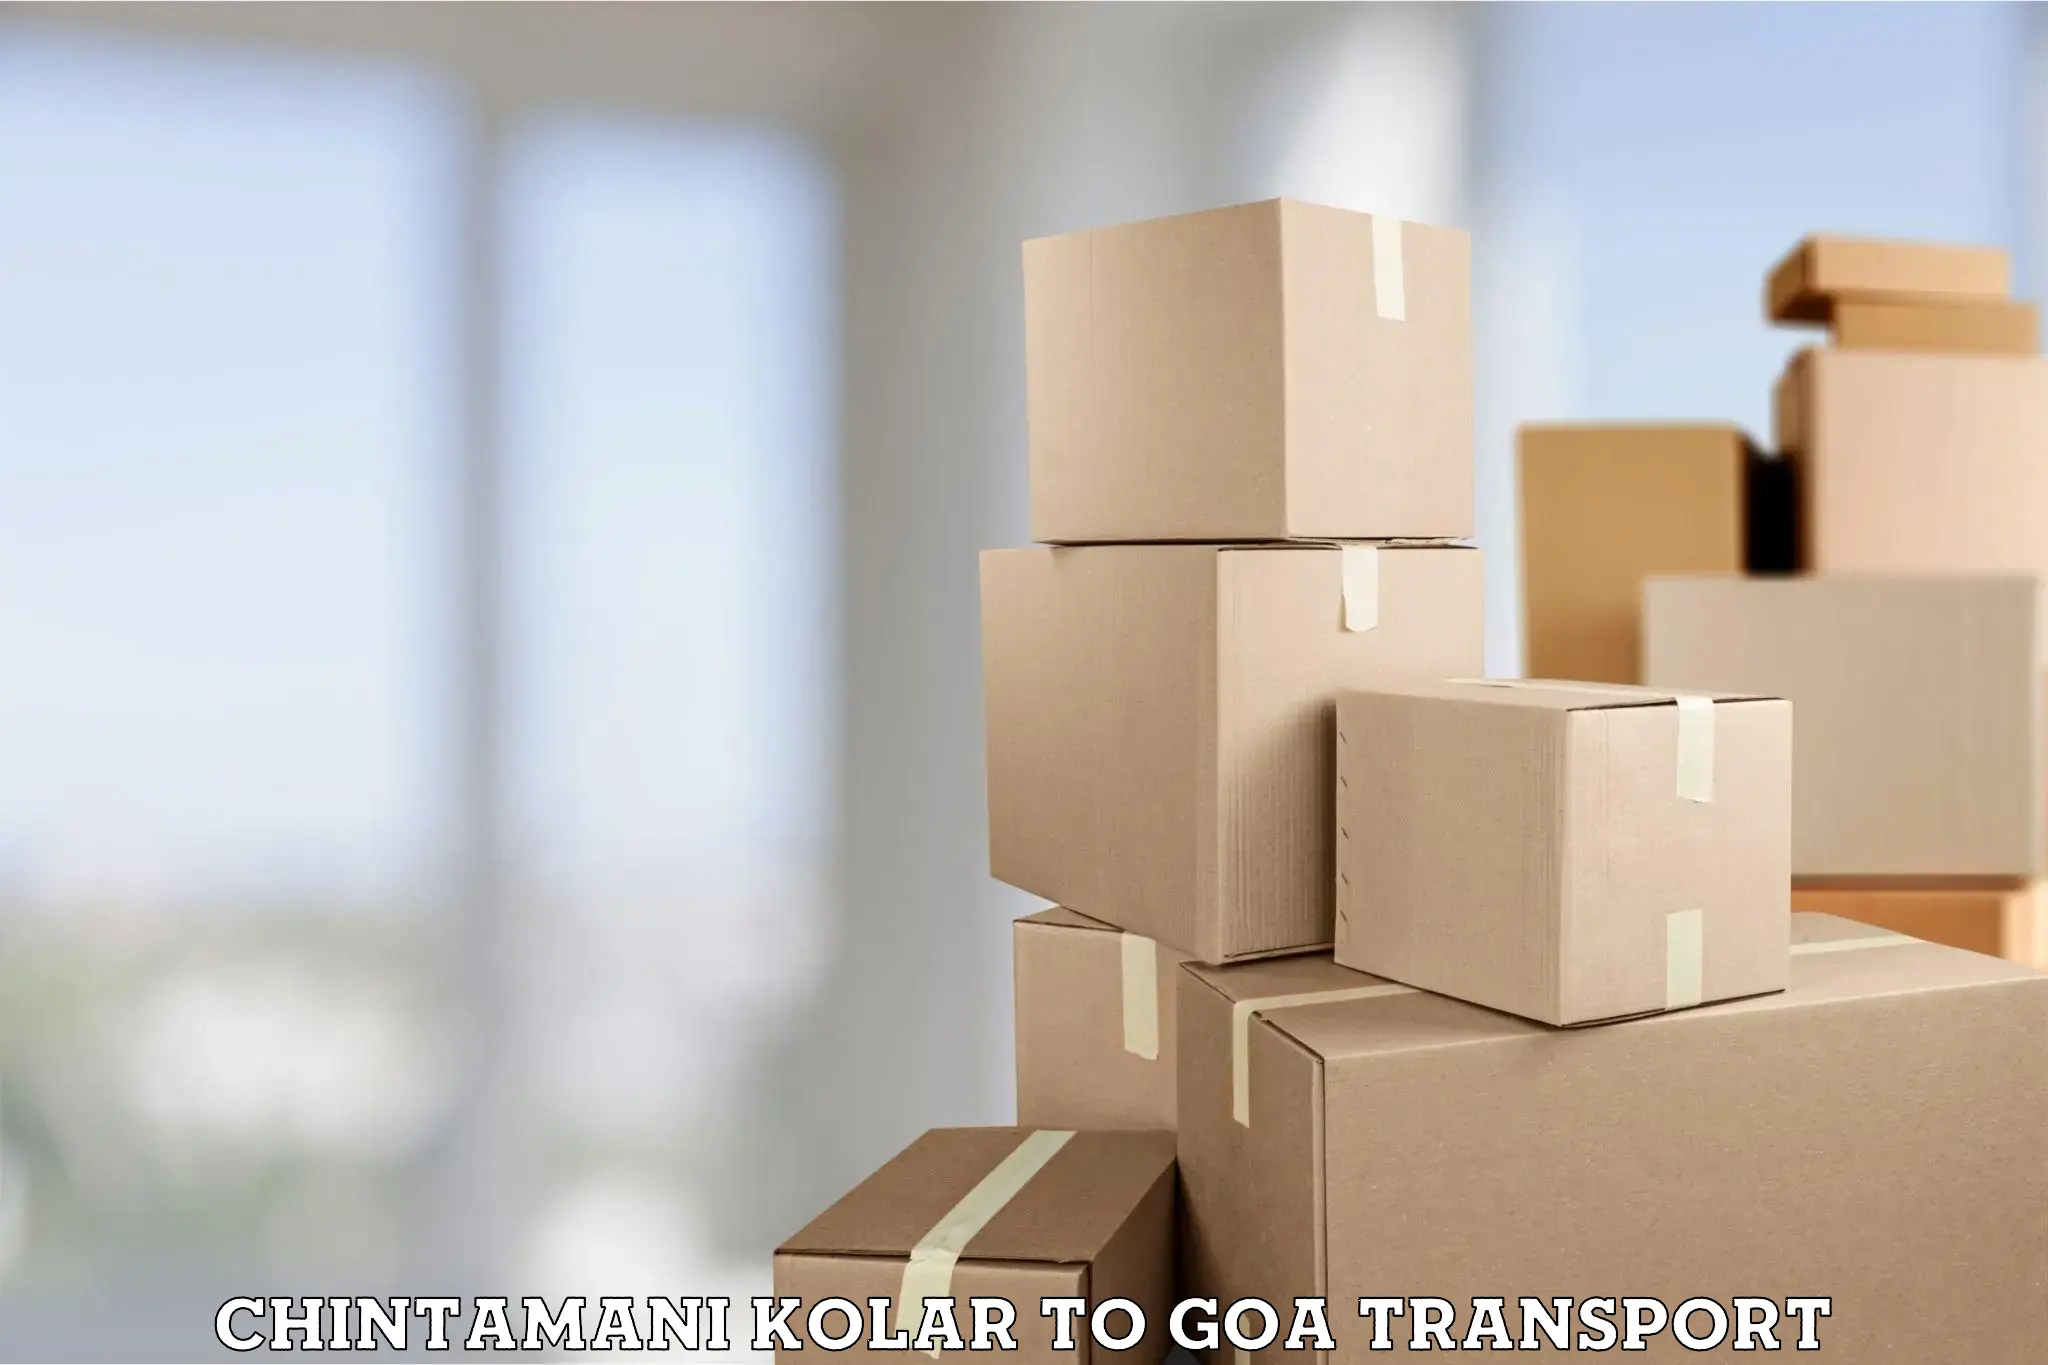 Furniture transport service in Chintamani Kolar to Goa